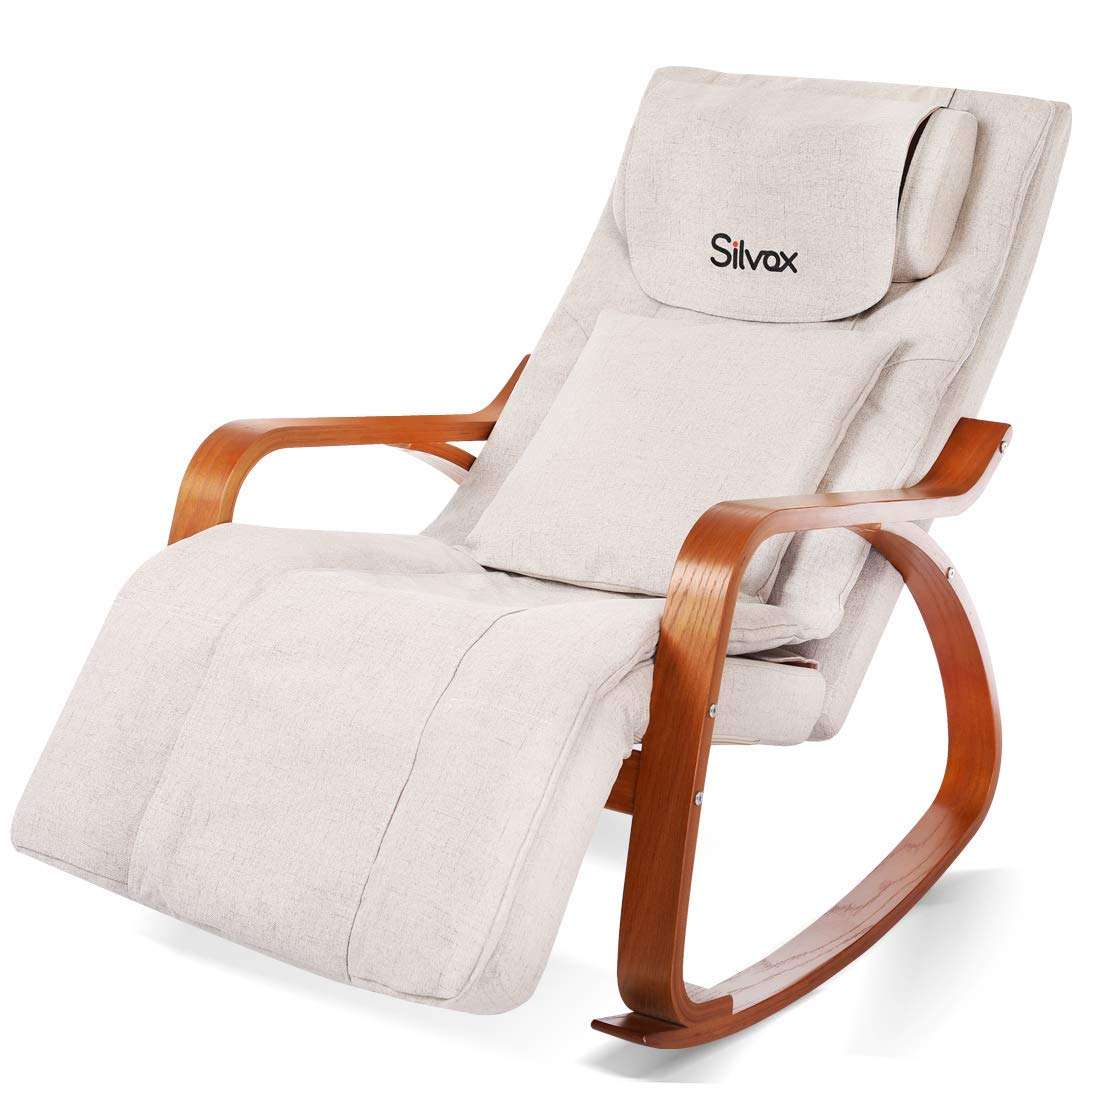 Silvox Massage Chair Recliner